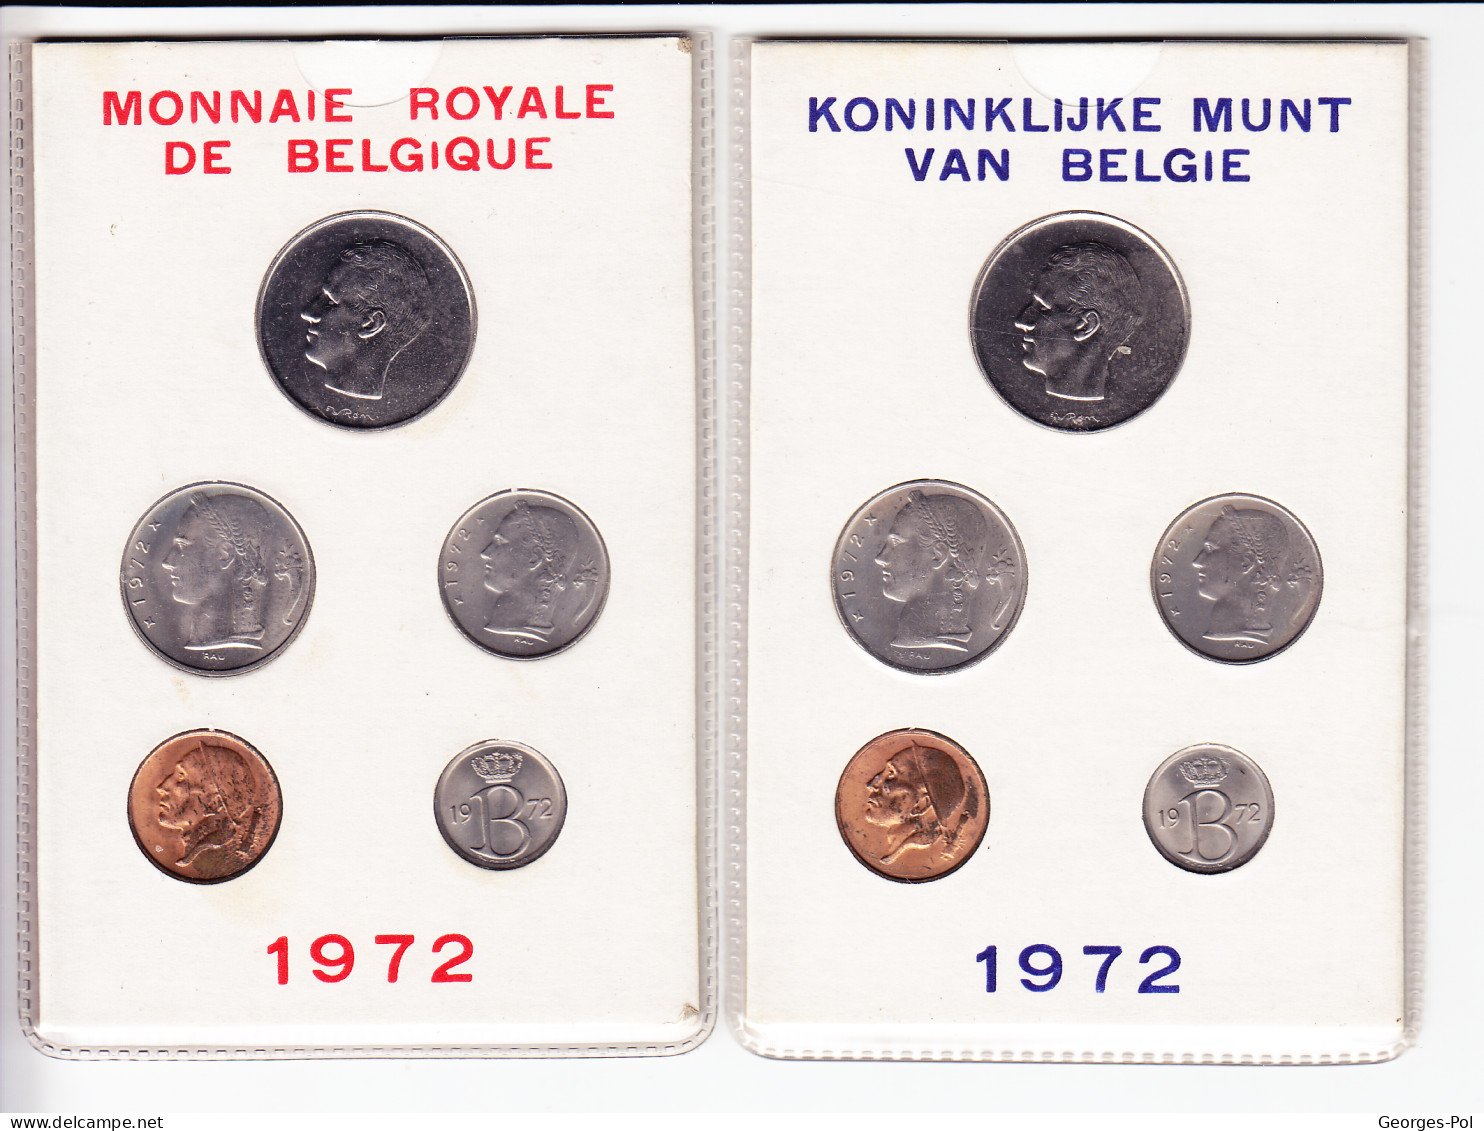 Monnaie Royale De Belgique 1972 Koninklijke Munt Van België. 2 Cartes De 5 Pièces Non Circulées - FDC, BU, Proofs & Presentation Cases